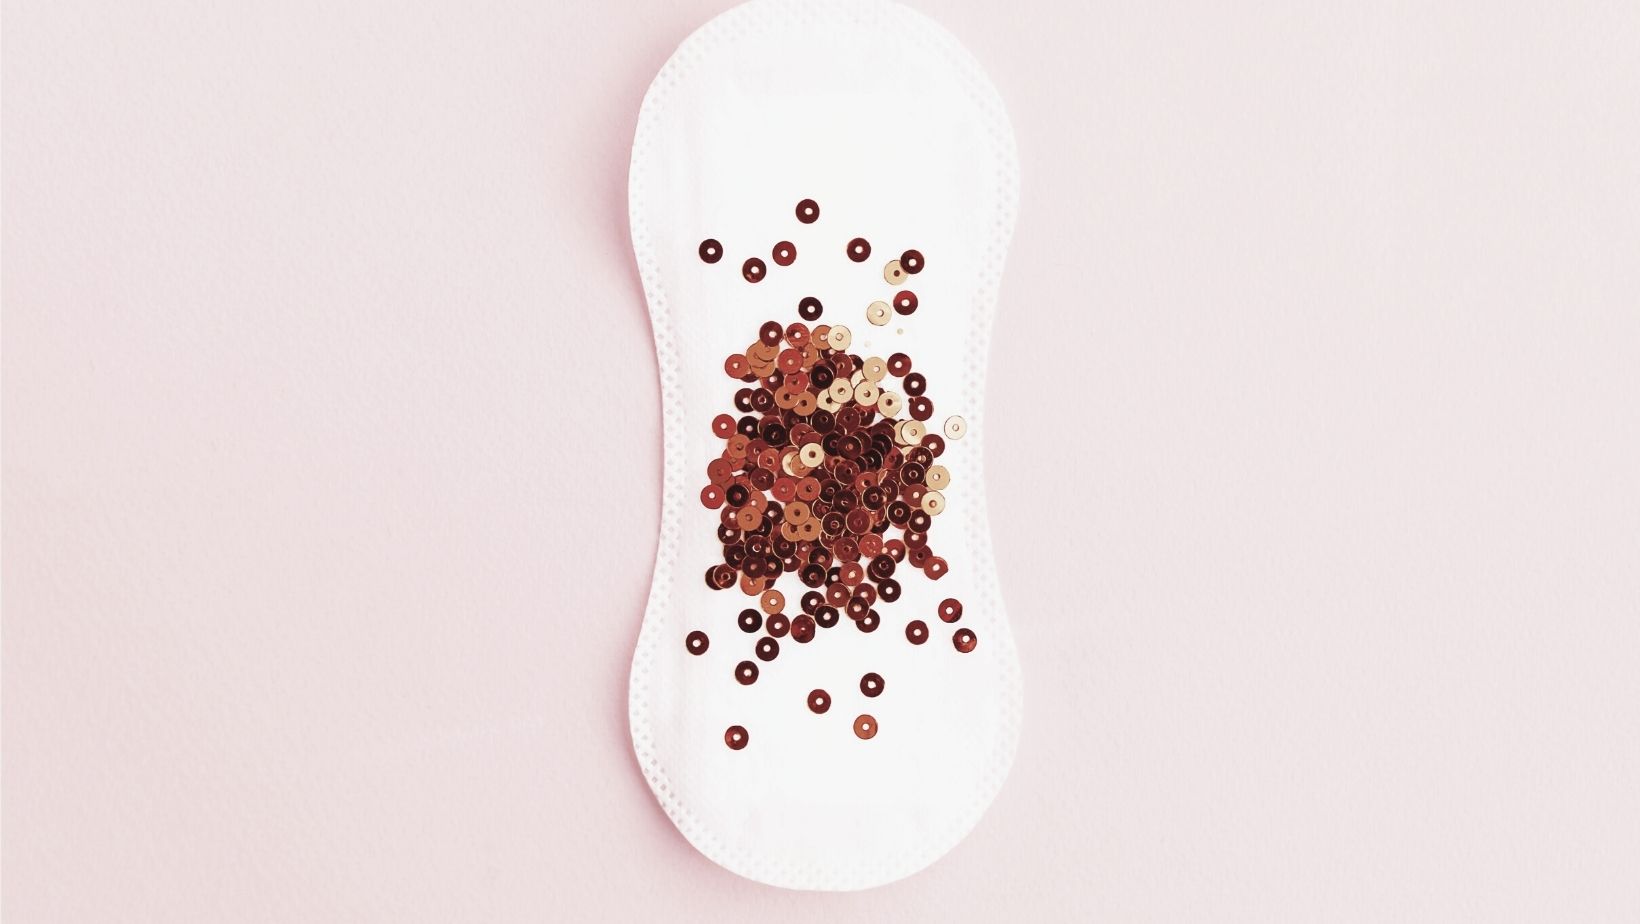 Notre peau et notre cycle menstruel